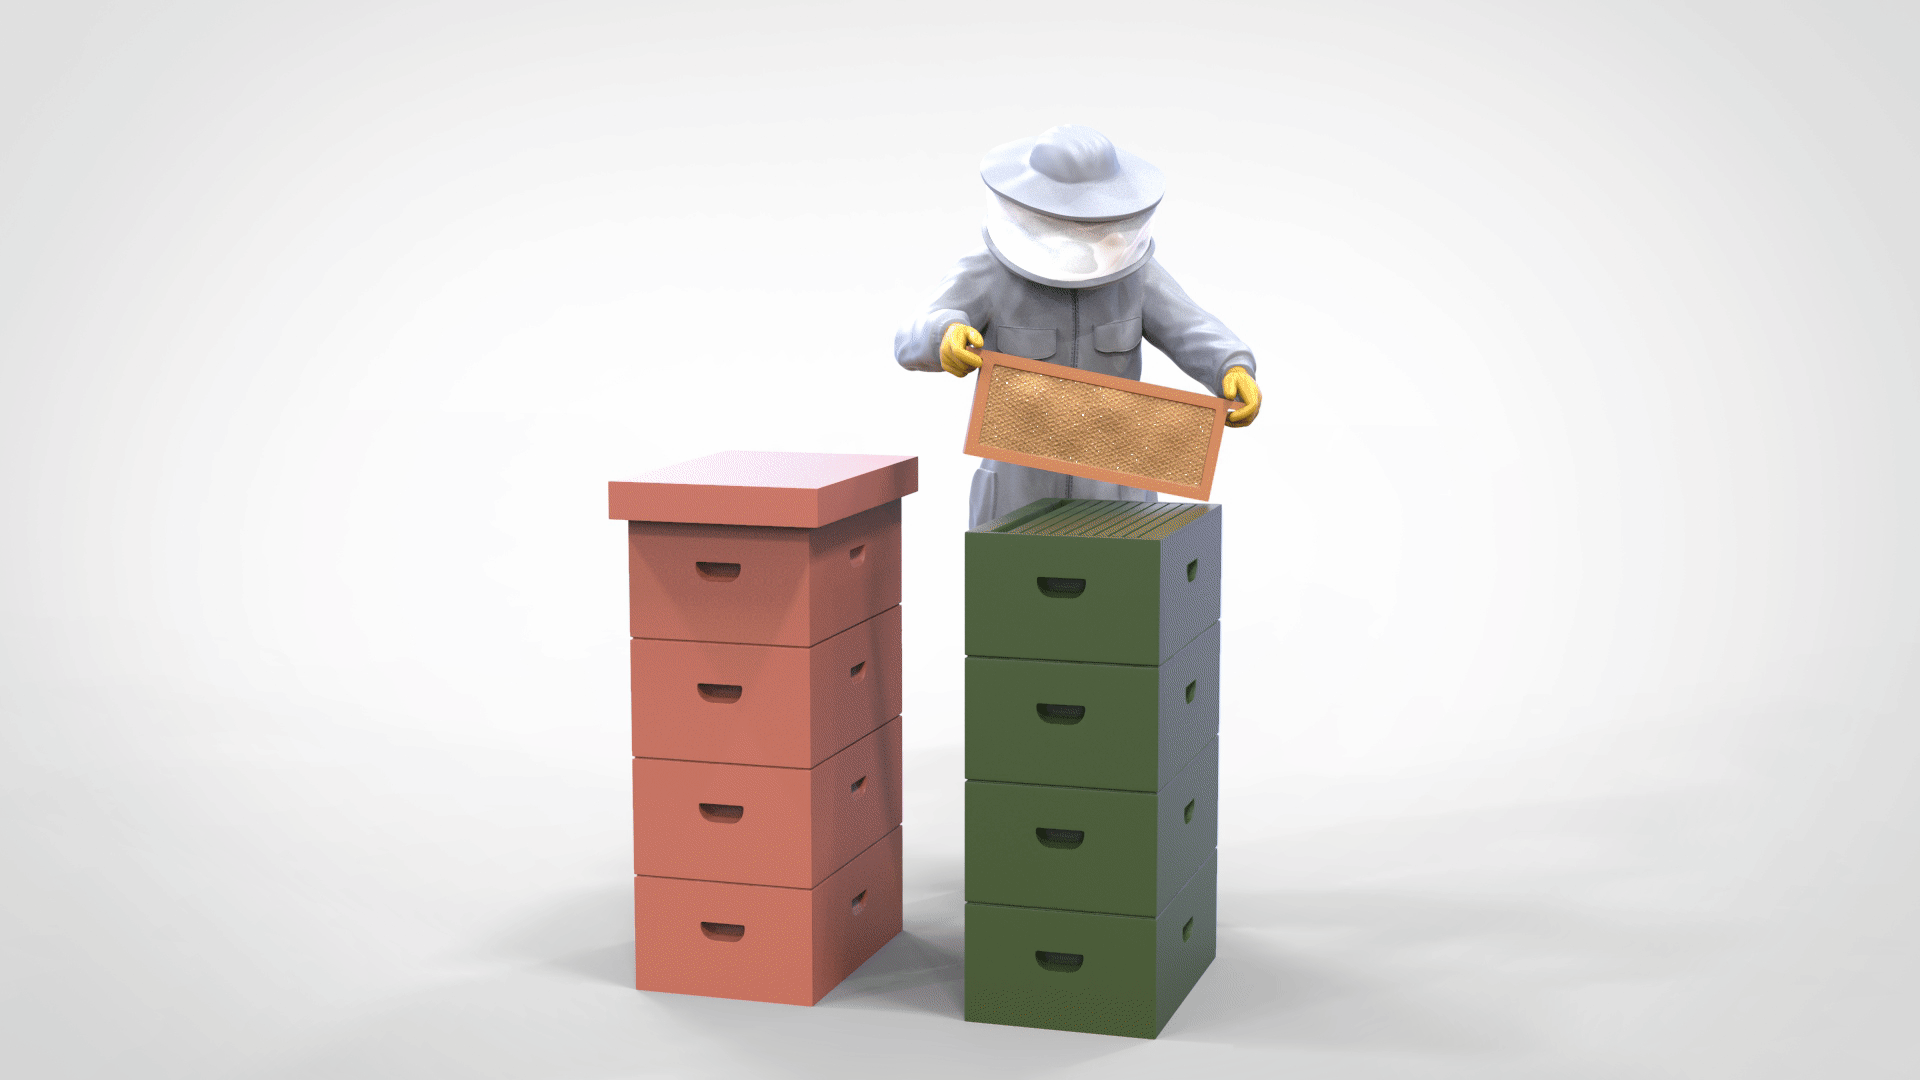 Produktfoto Diorama und Modellbau Miniatur Figur: Imker mit Bienenstock